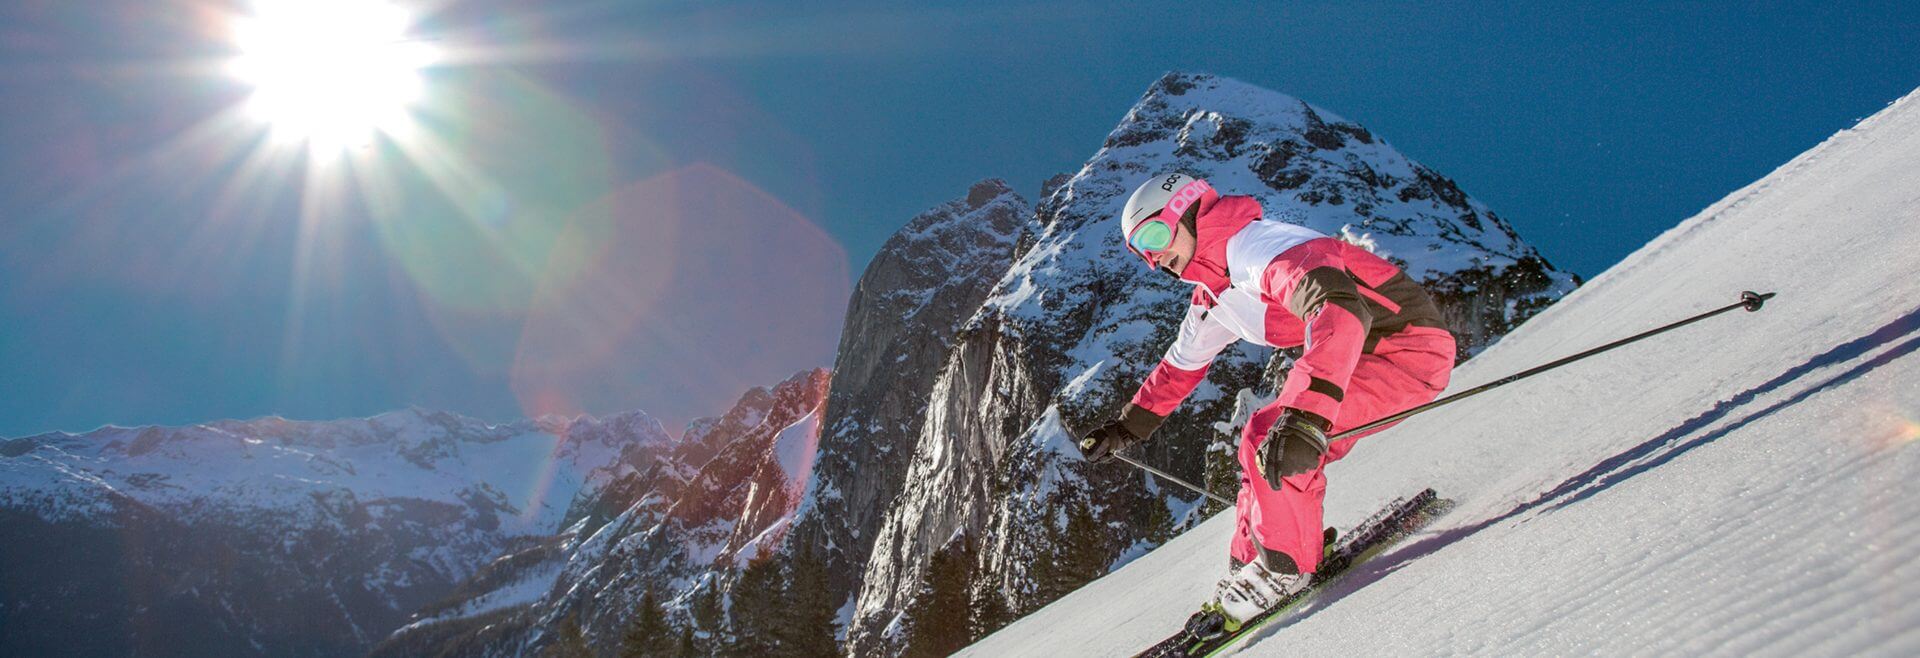 Skifahrer im rot-weißen Overall auf der frisch präparierten Piste